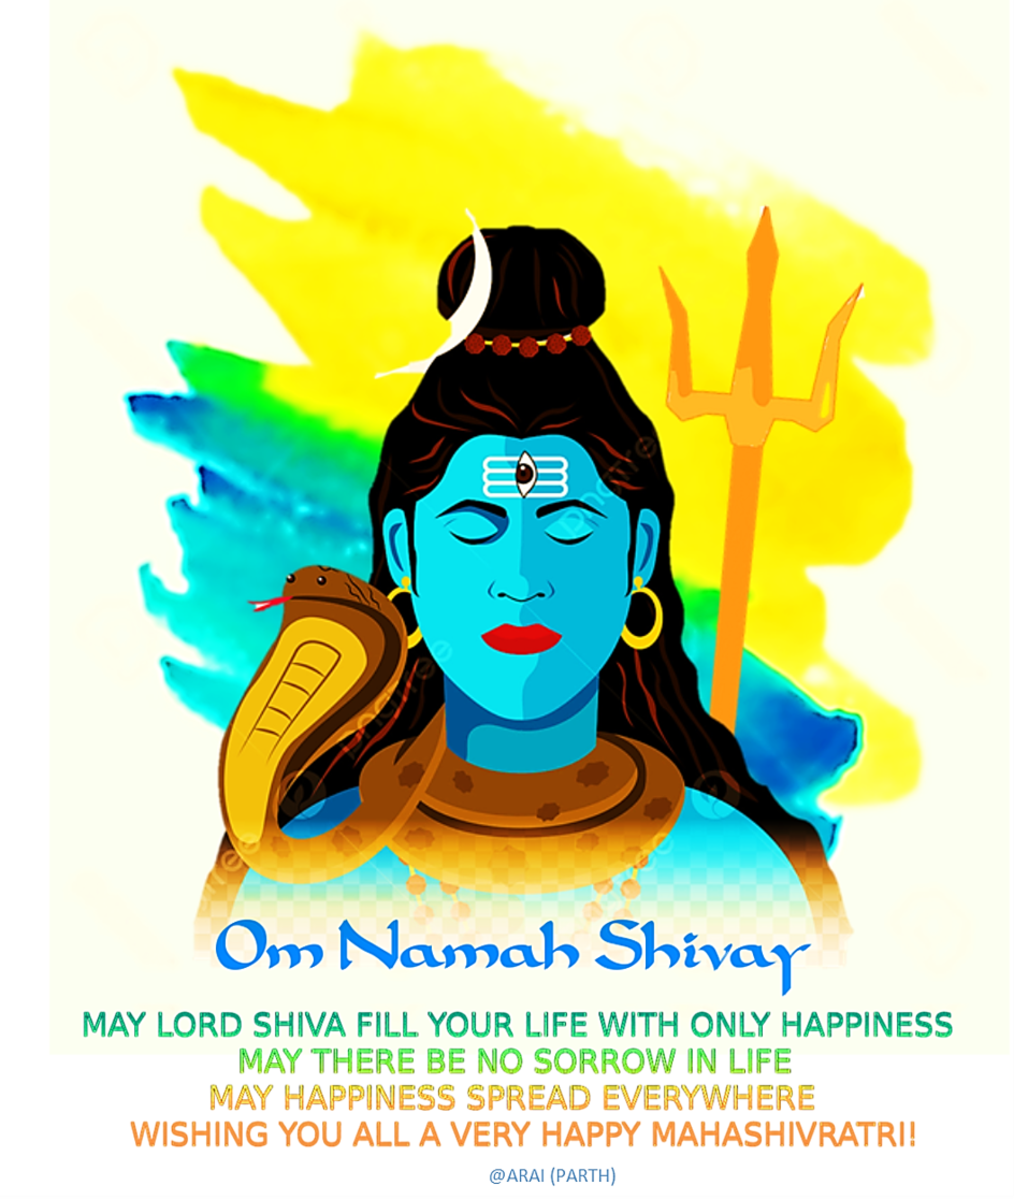 Happy Maha Shivaratri wishes, greetings for employees